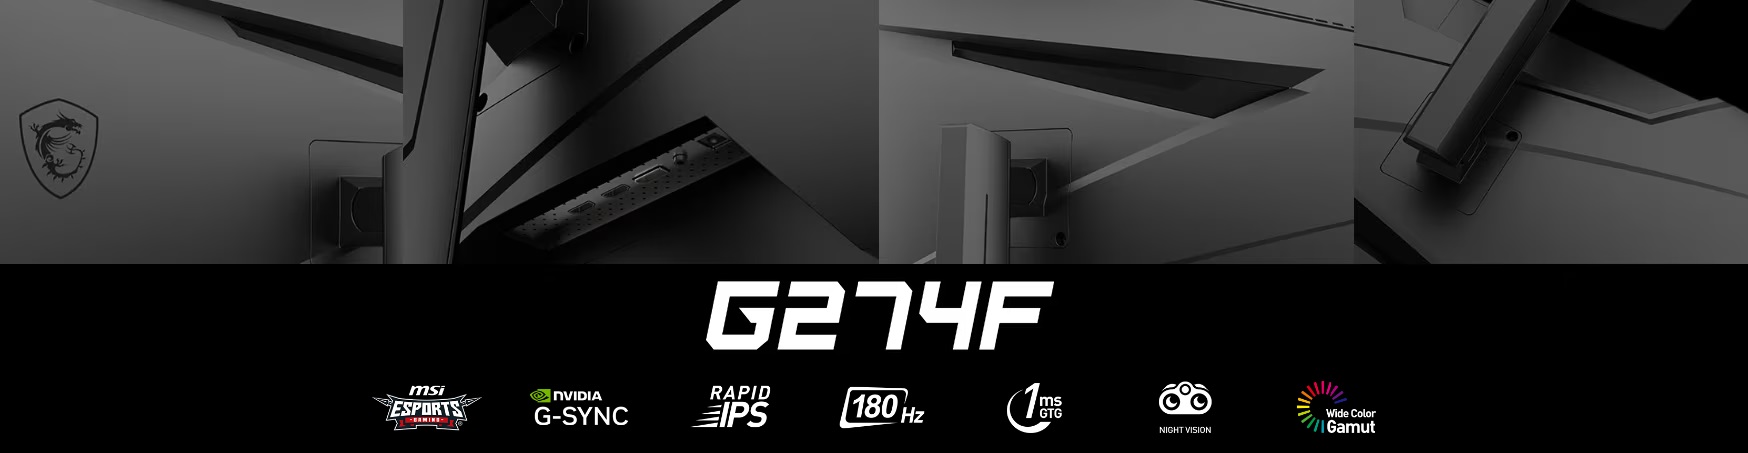 Гейминг монитор MSI - G274F